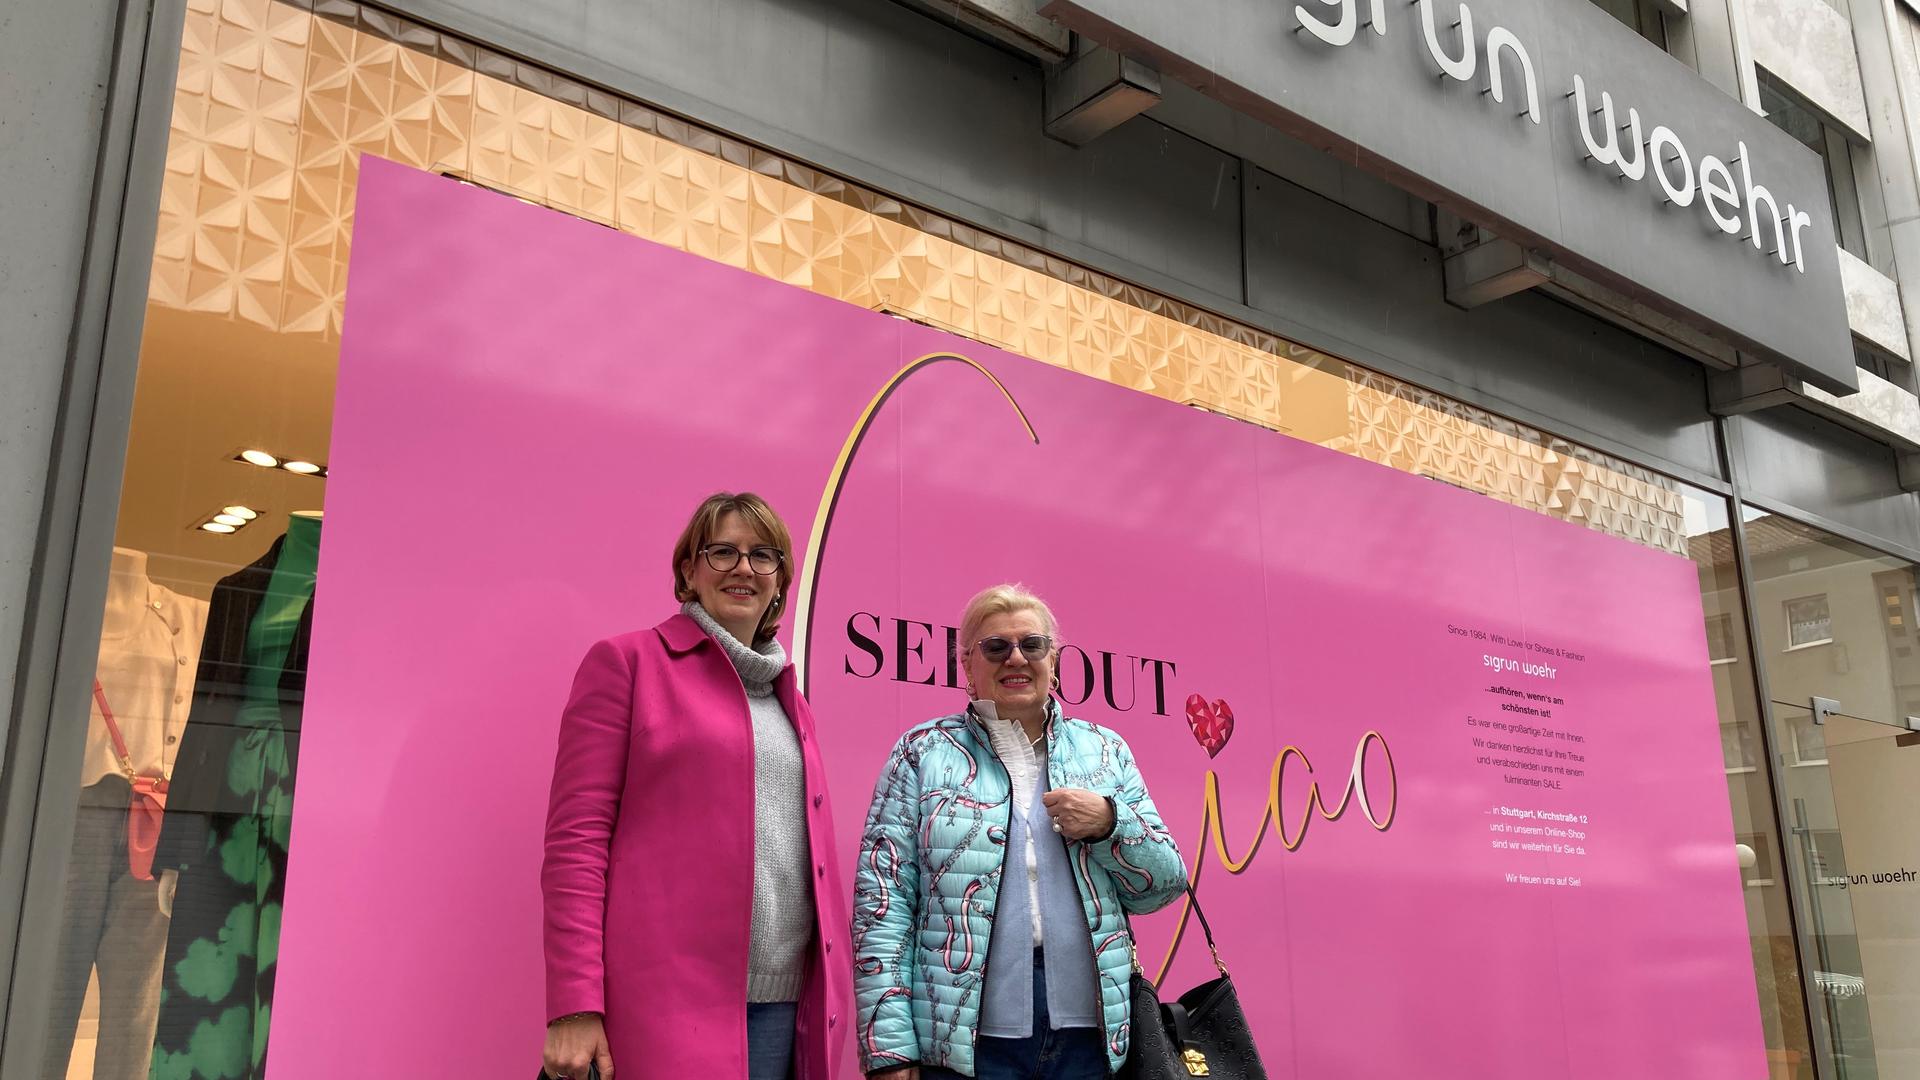 Stammkundinnen: Carola Funk (links) und ihre Mutter Christa Funk schauen jedes Mal im Schuhfachgeschäft Sigrun Woehr vorbei, wenn sie zum Einkaufen nach Pforzheim kommen. Ab Sommer fällt dieser Part der Shopping-Tour weg. 